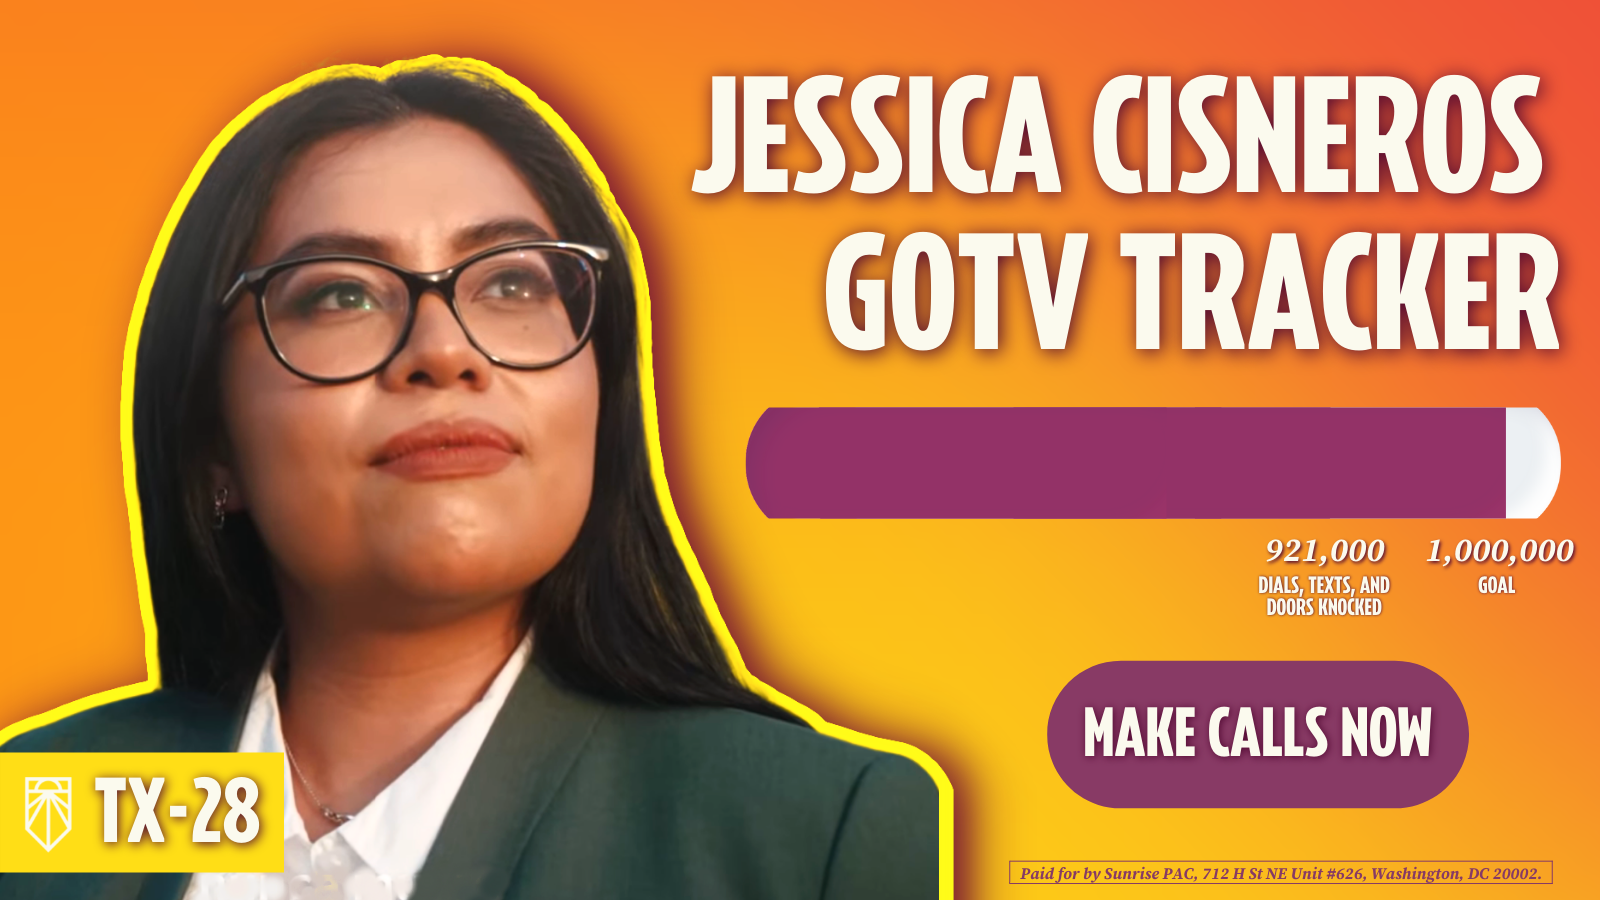 Jessica Cisneros GOTV Tracker – 921,000 versuchte Wählerkontakte, 1,000,000 Ziele – Anrufe tätigen. Bezahlt von Sunrise PAC, 712 H St NE Unit #626, Washington, DC 20002.